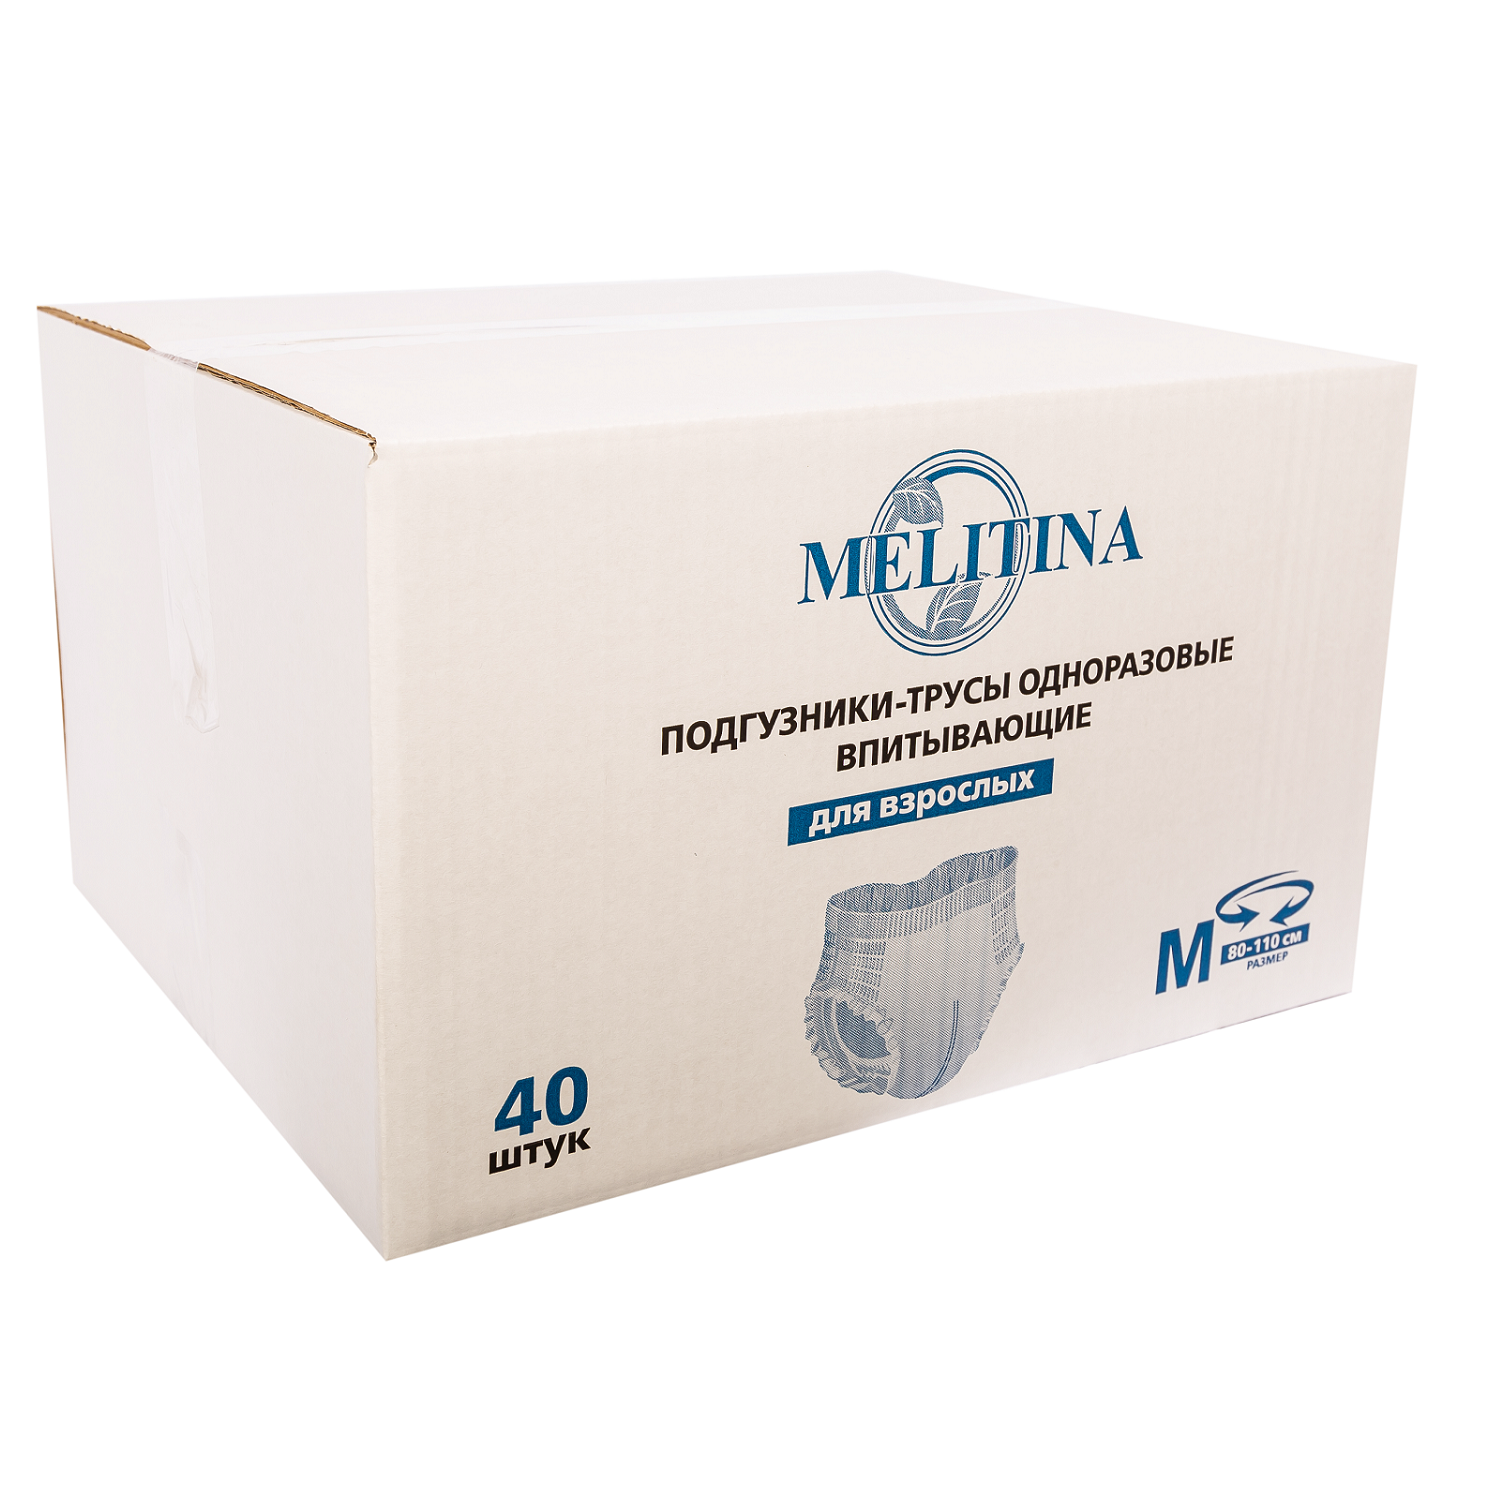 Подгузники-трусы Melitina для взрослых M 50-8745 - фото 1